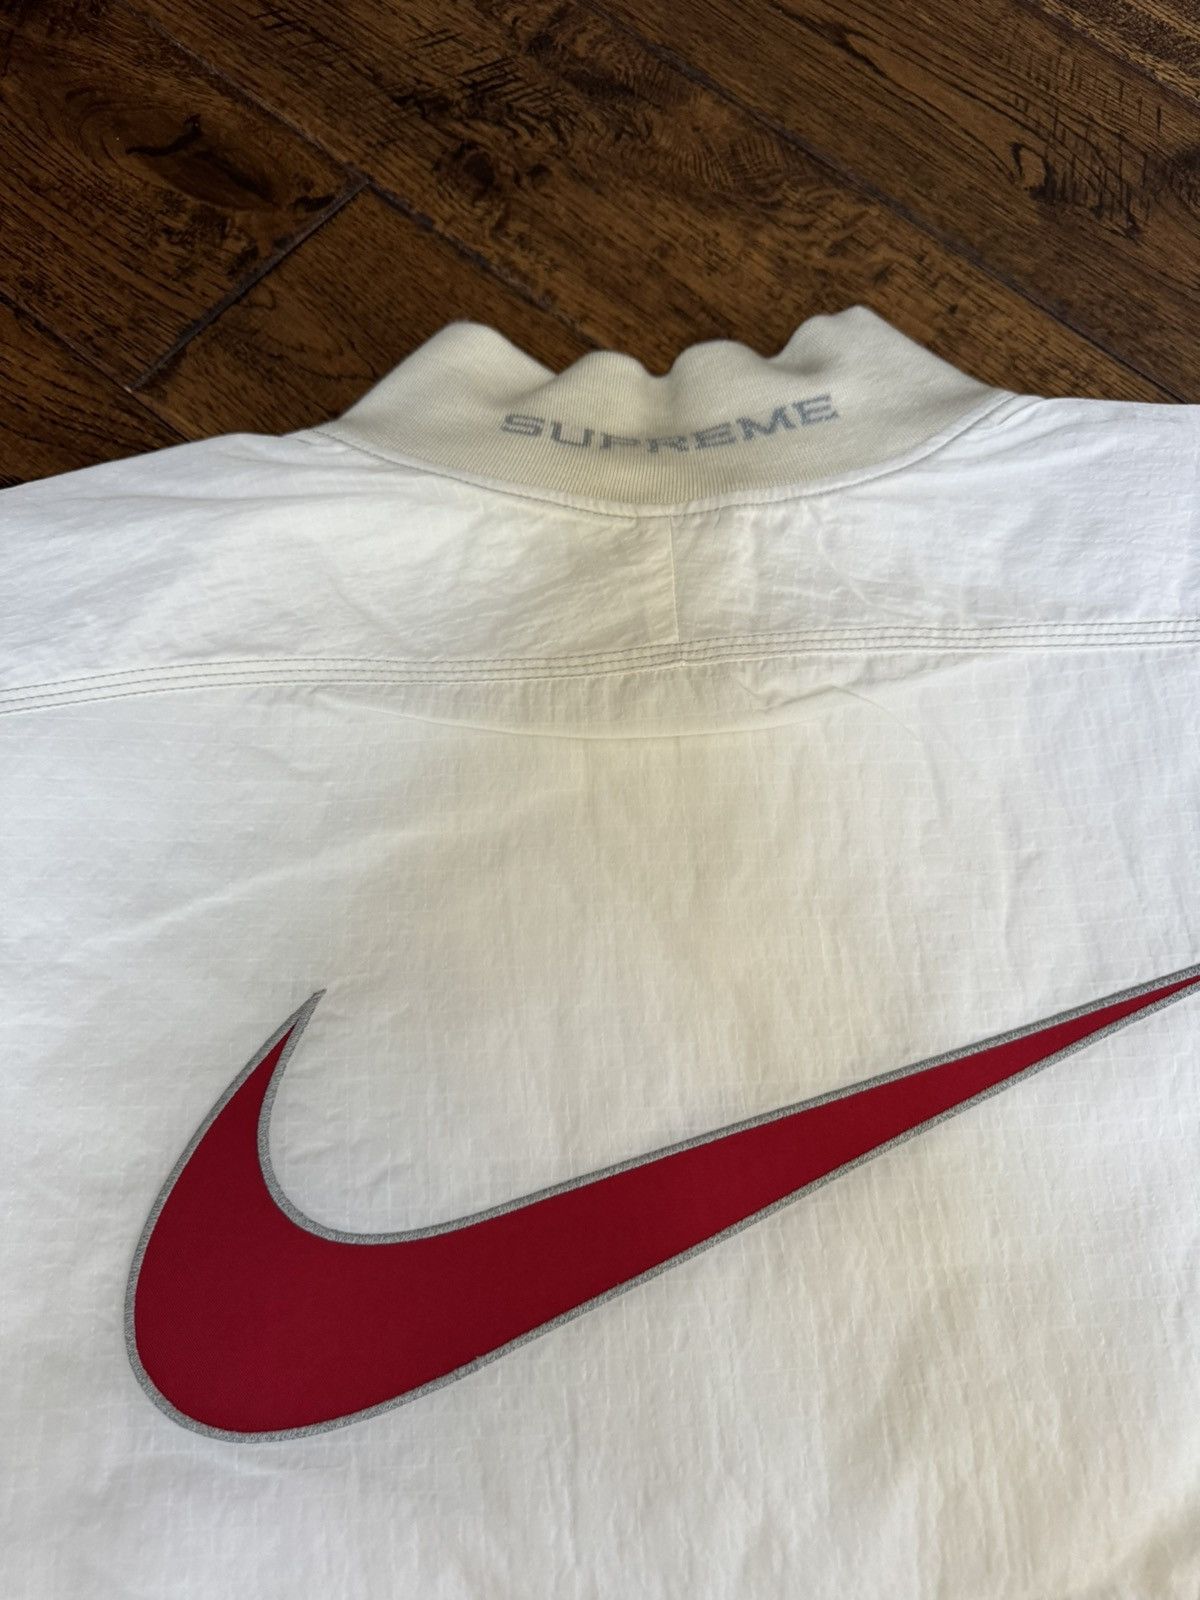 Supreme Supreme Nike Ripstop Pullover | Grailed